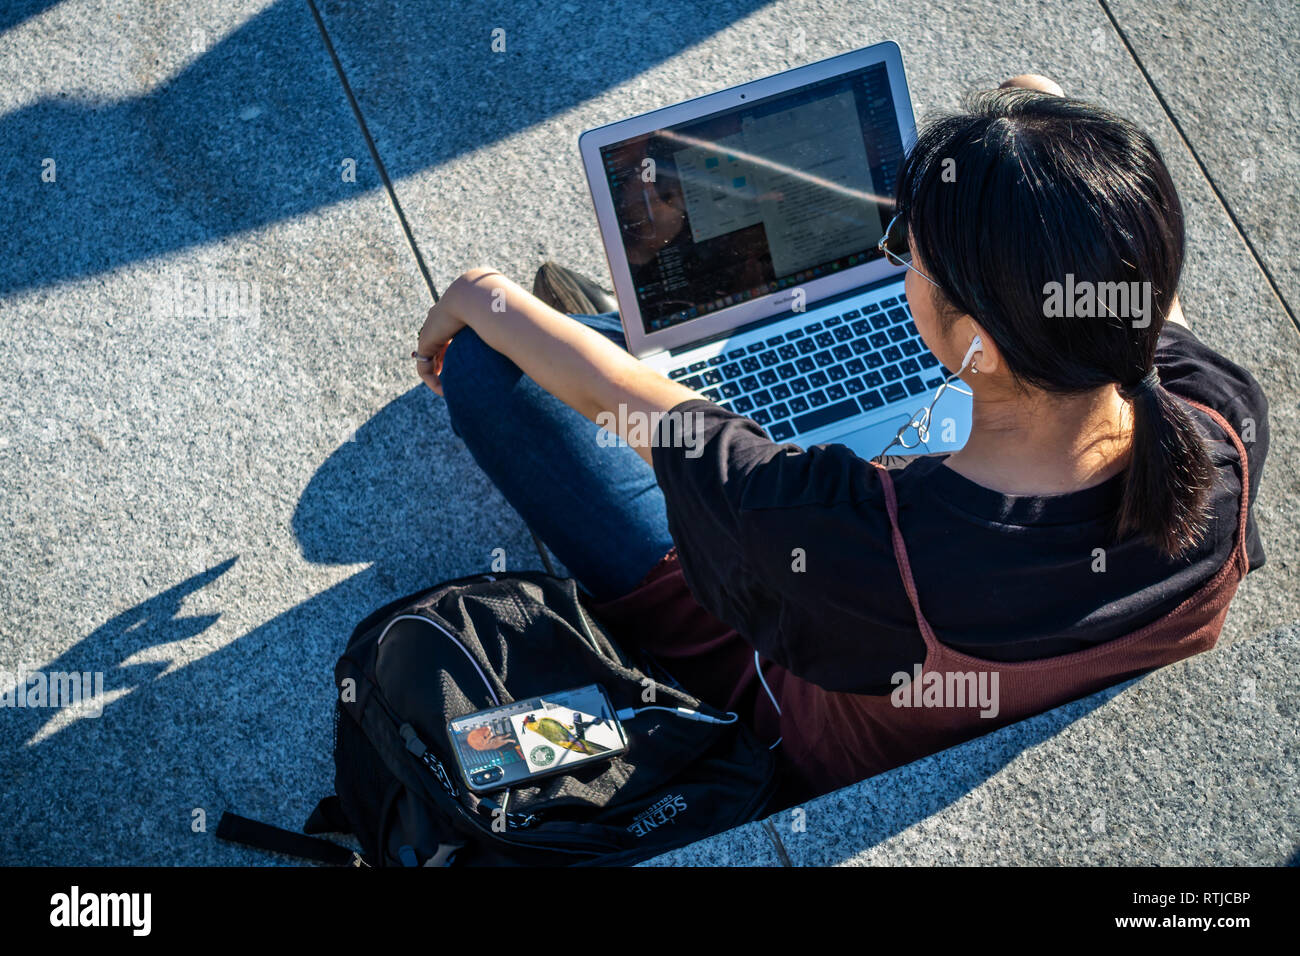 Bild von oben der jungen Dame sitzen draußen in der Sonne und mit Ihrem Laptop und Handy an Kohle Tropfen Yard, Kings Cross, London, England Stockfoto